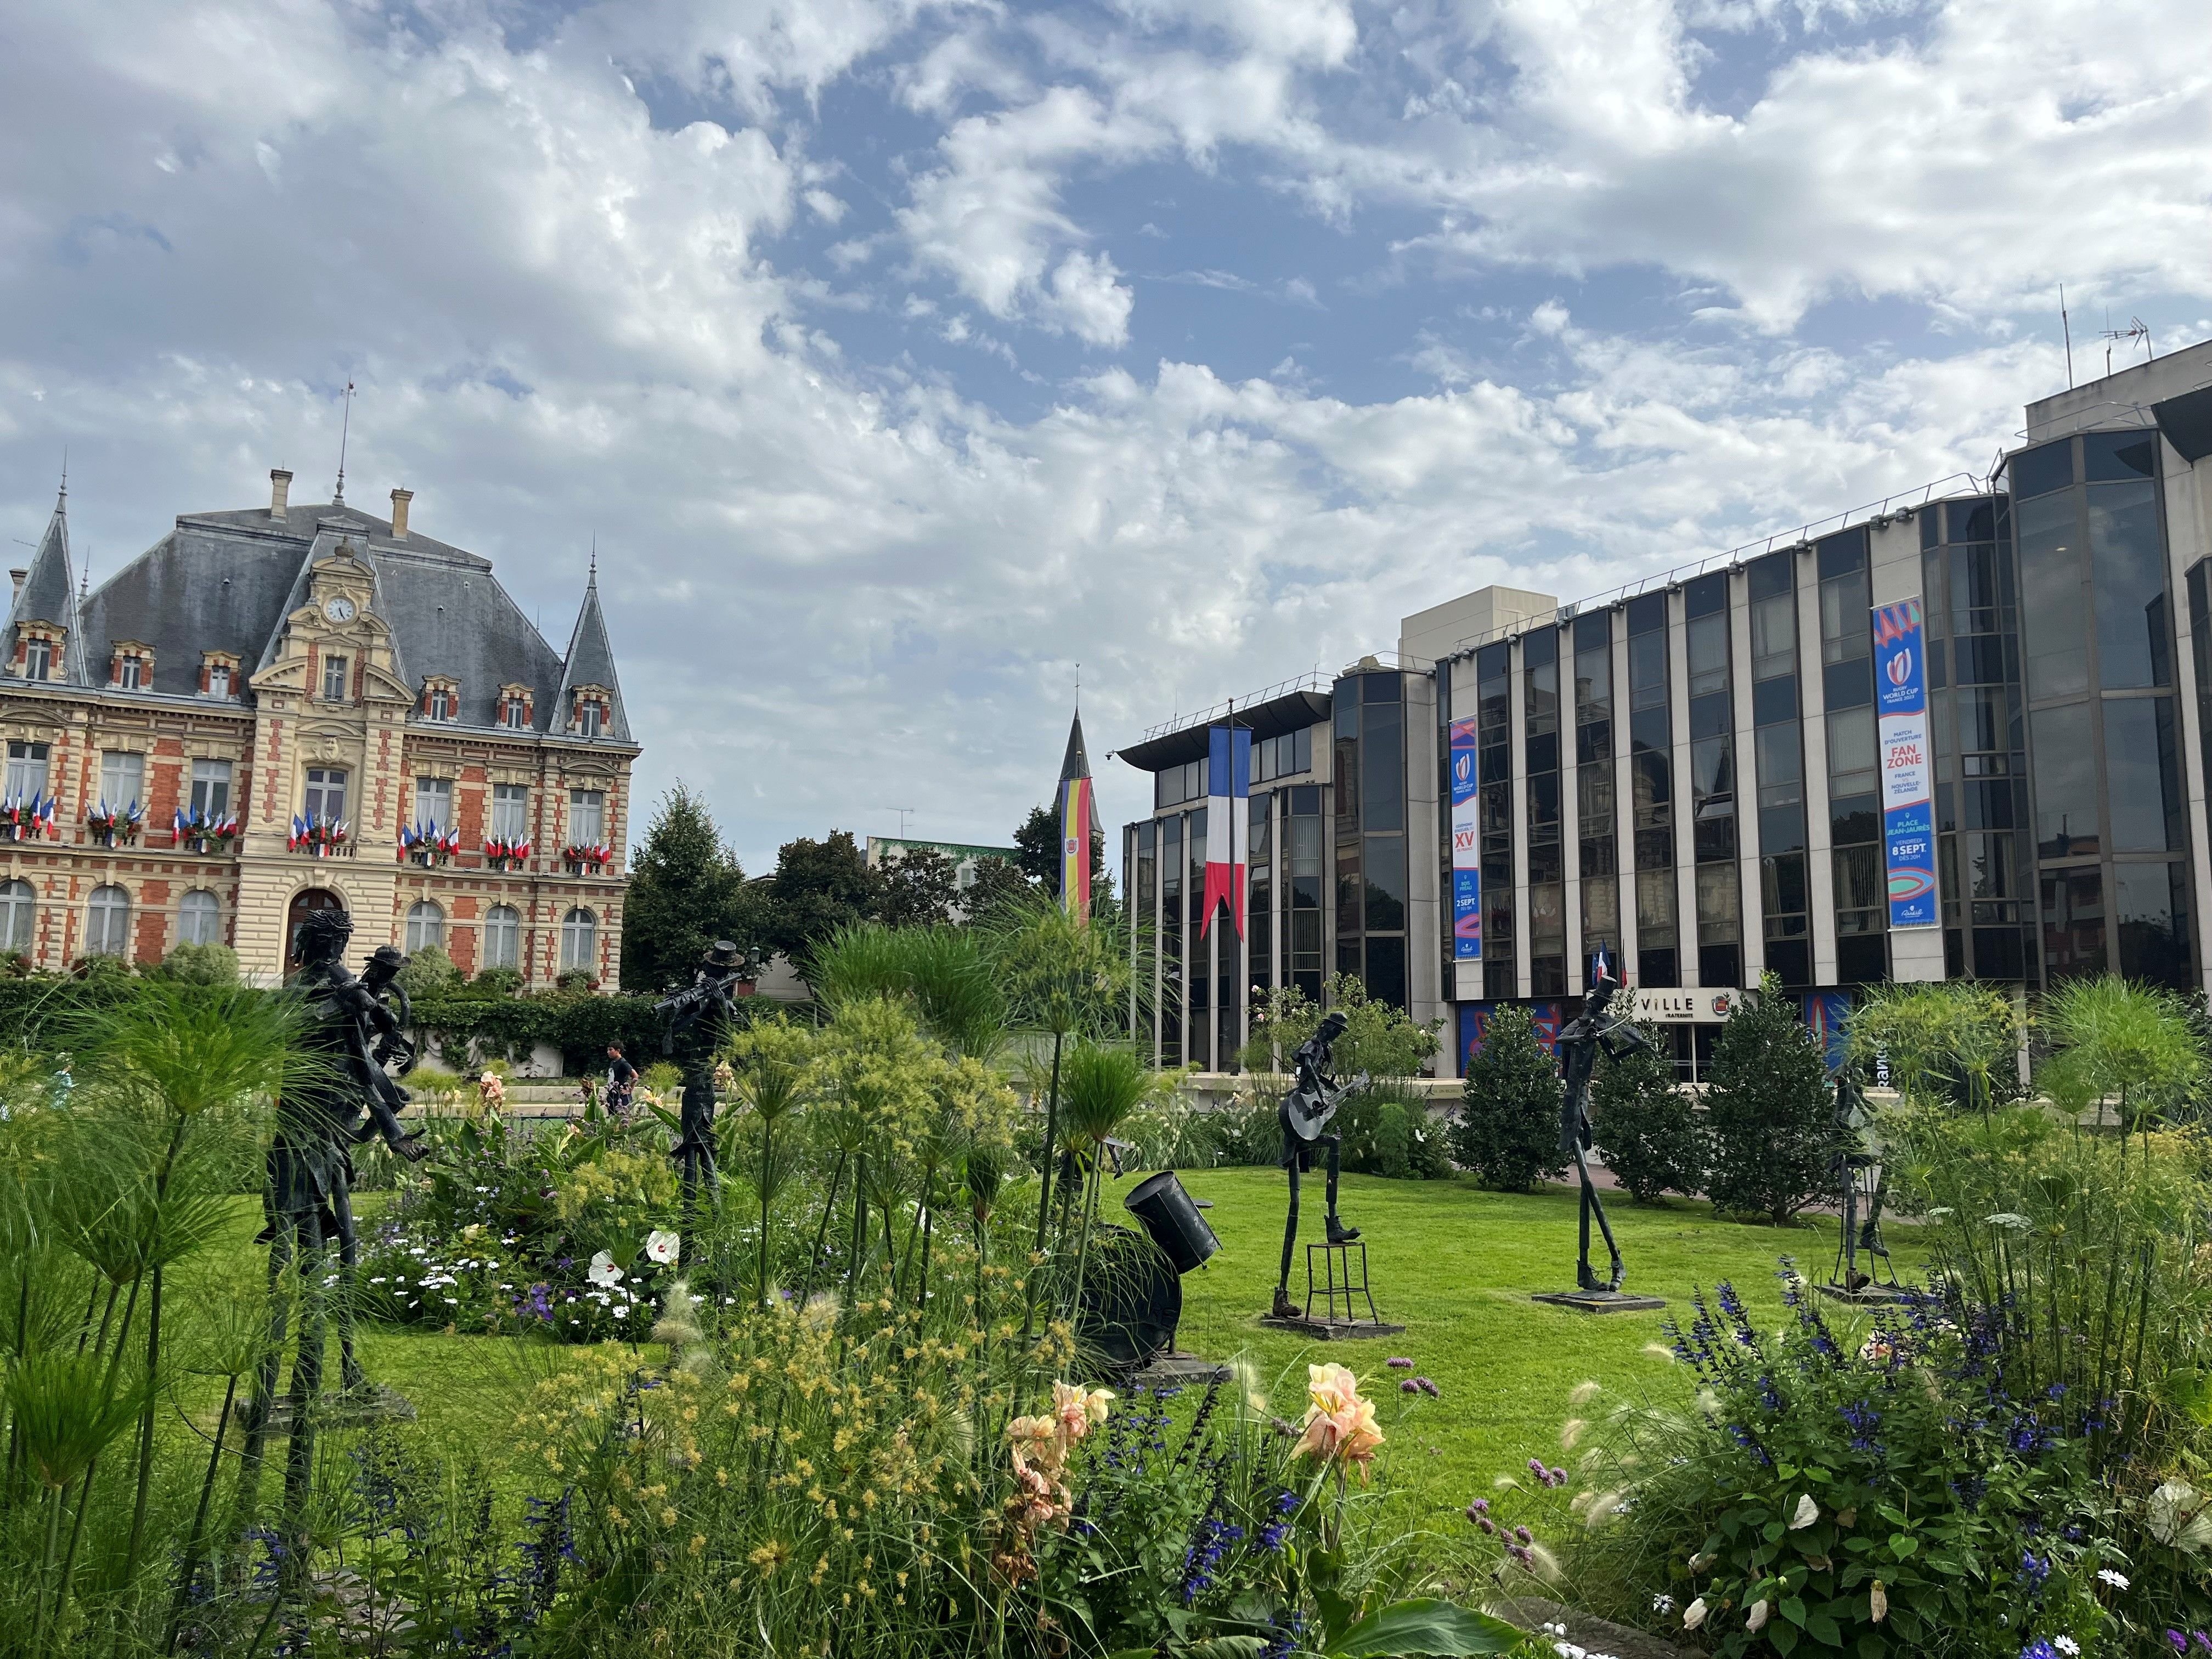 Rueil-Malmaison (Hauts-de-Seine), le 23 août. Le centre-ville porte déjà les couleurs de la Coupe du monde de rugby. De nombreuses animations sont prévues dans la commune durant les deux mois de compétition. LP/Arthur Picard